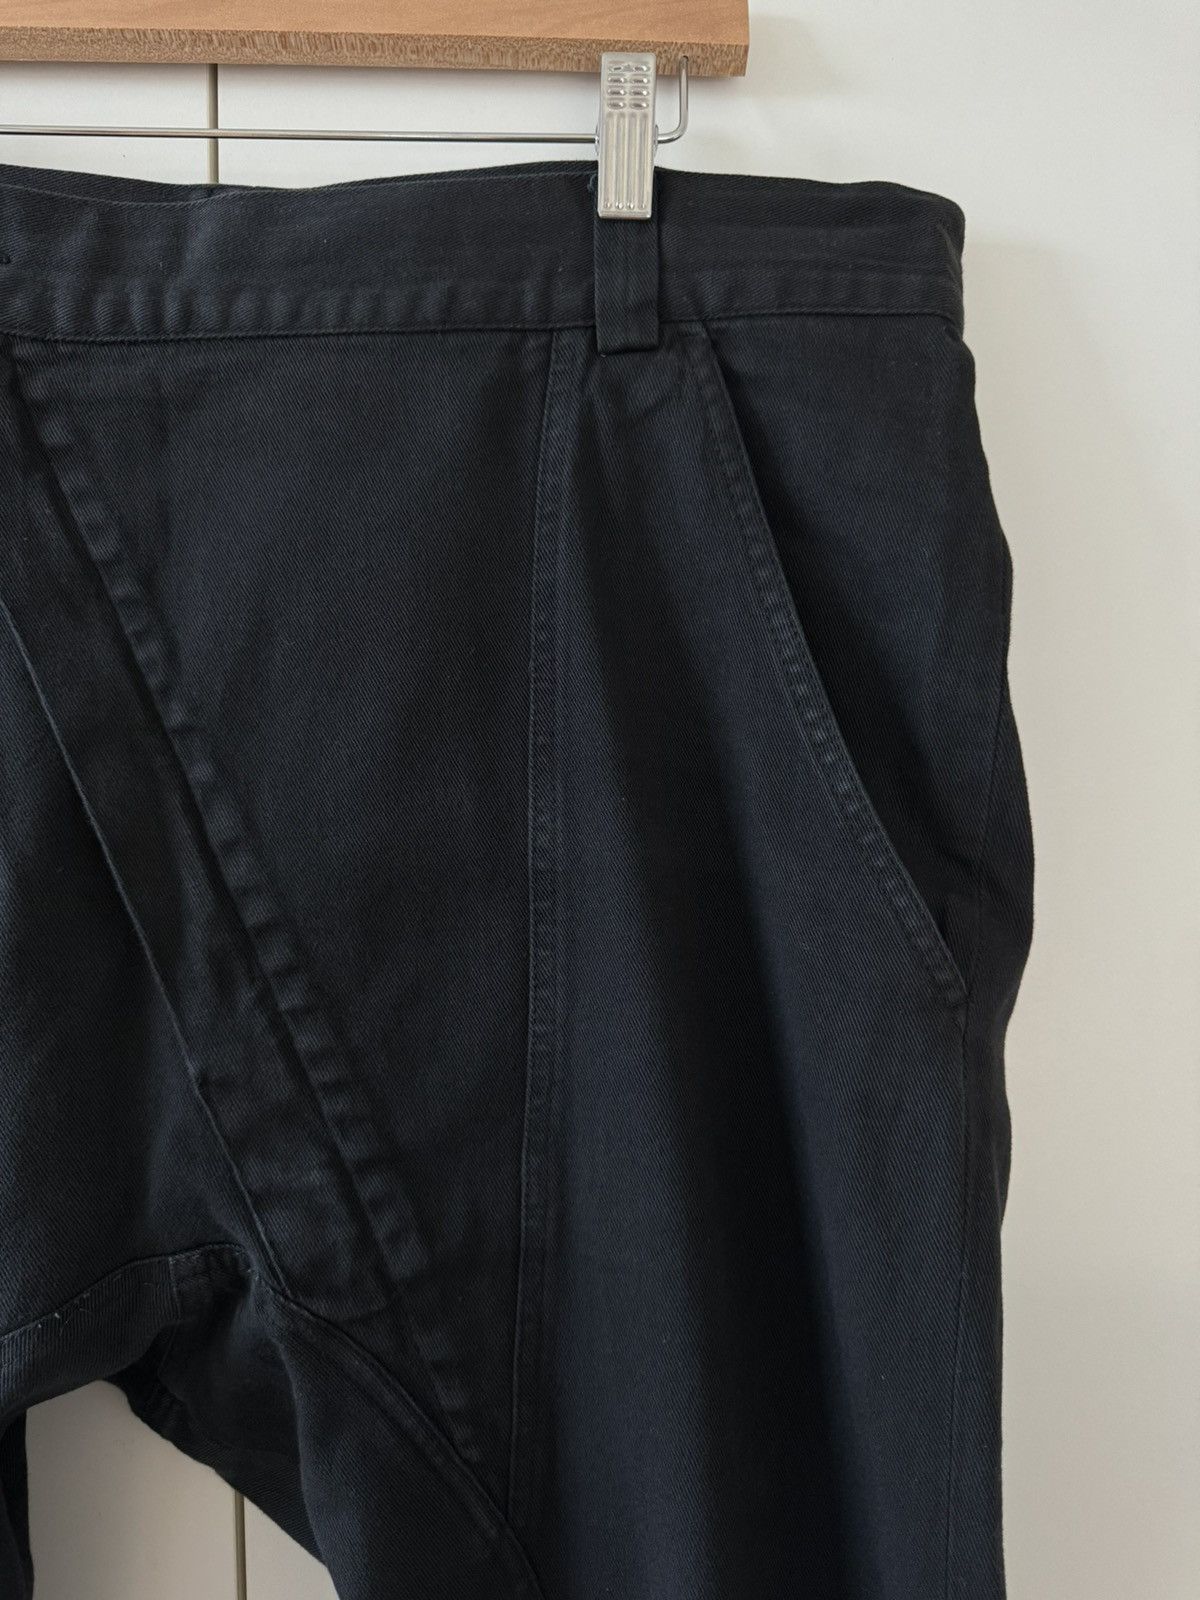 Alexandre Plokhov Alexandre Plokhov Asymmetrical Drop-crotch Pants FW14 50 Size US 34 / EU 50 - 3 Thumbnail